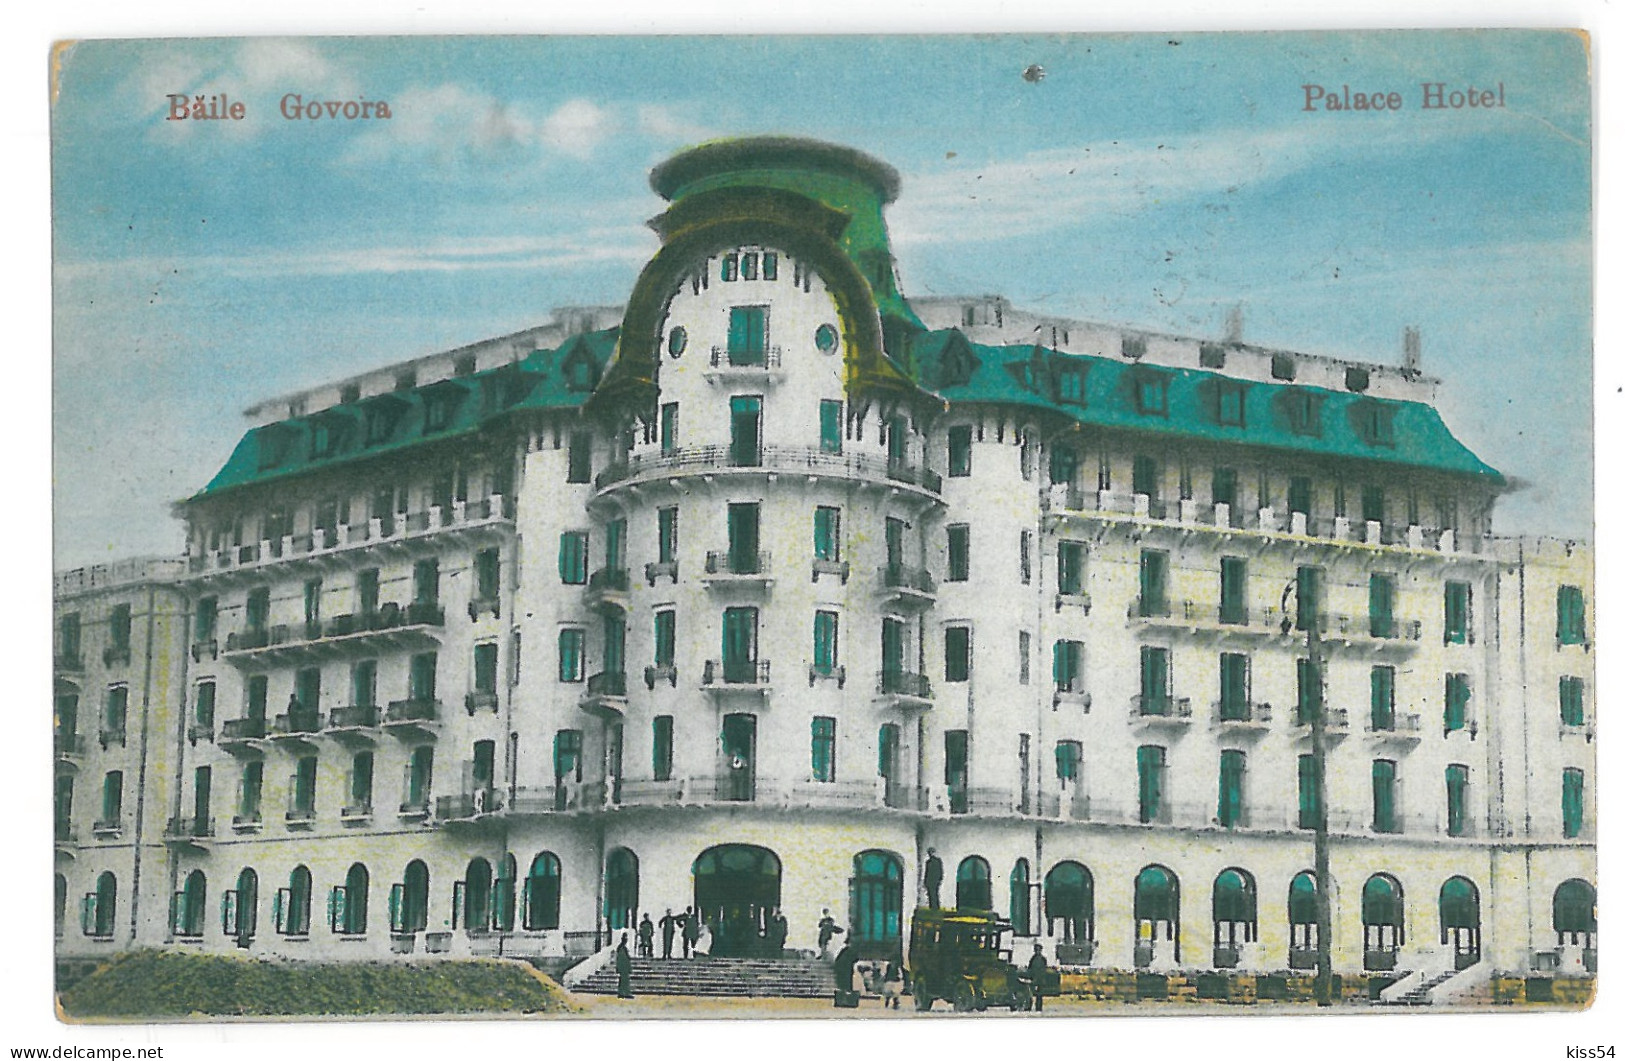 RO 89 - 13909 GOVORA, Valcea, Palace Hotel, Romania - Old Postcard - Used - 1926 - Roemenië